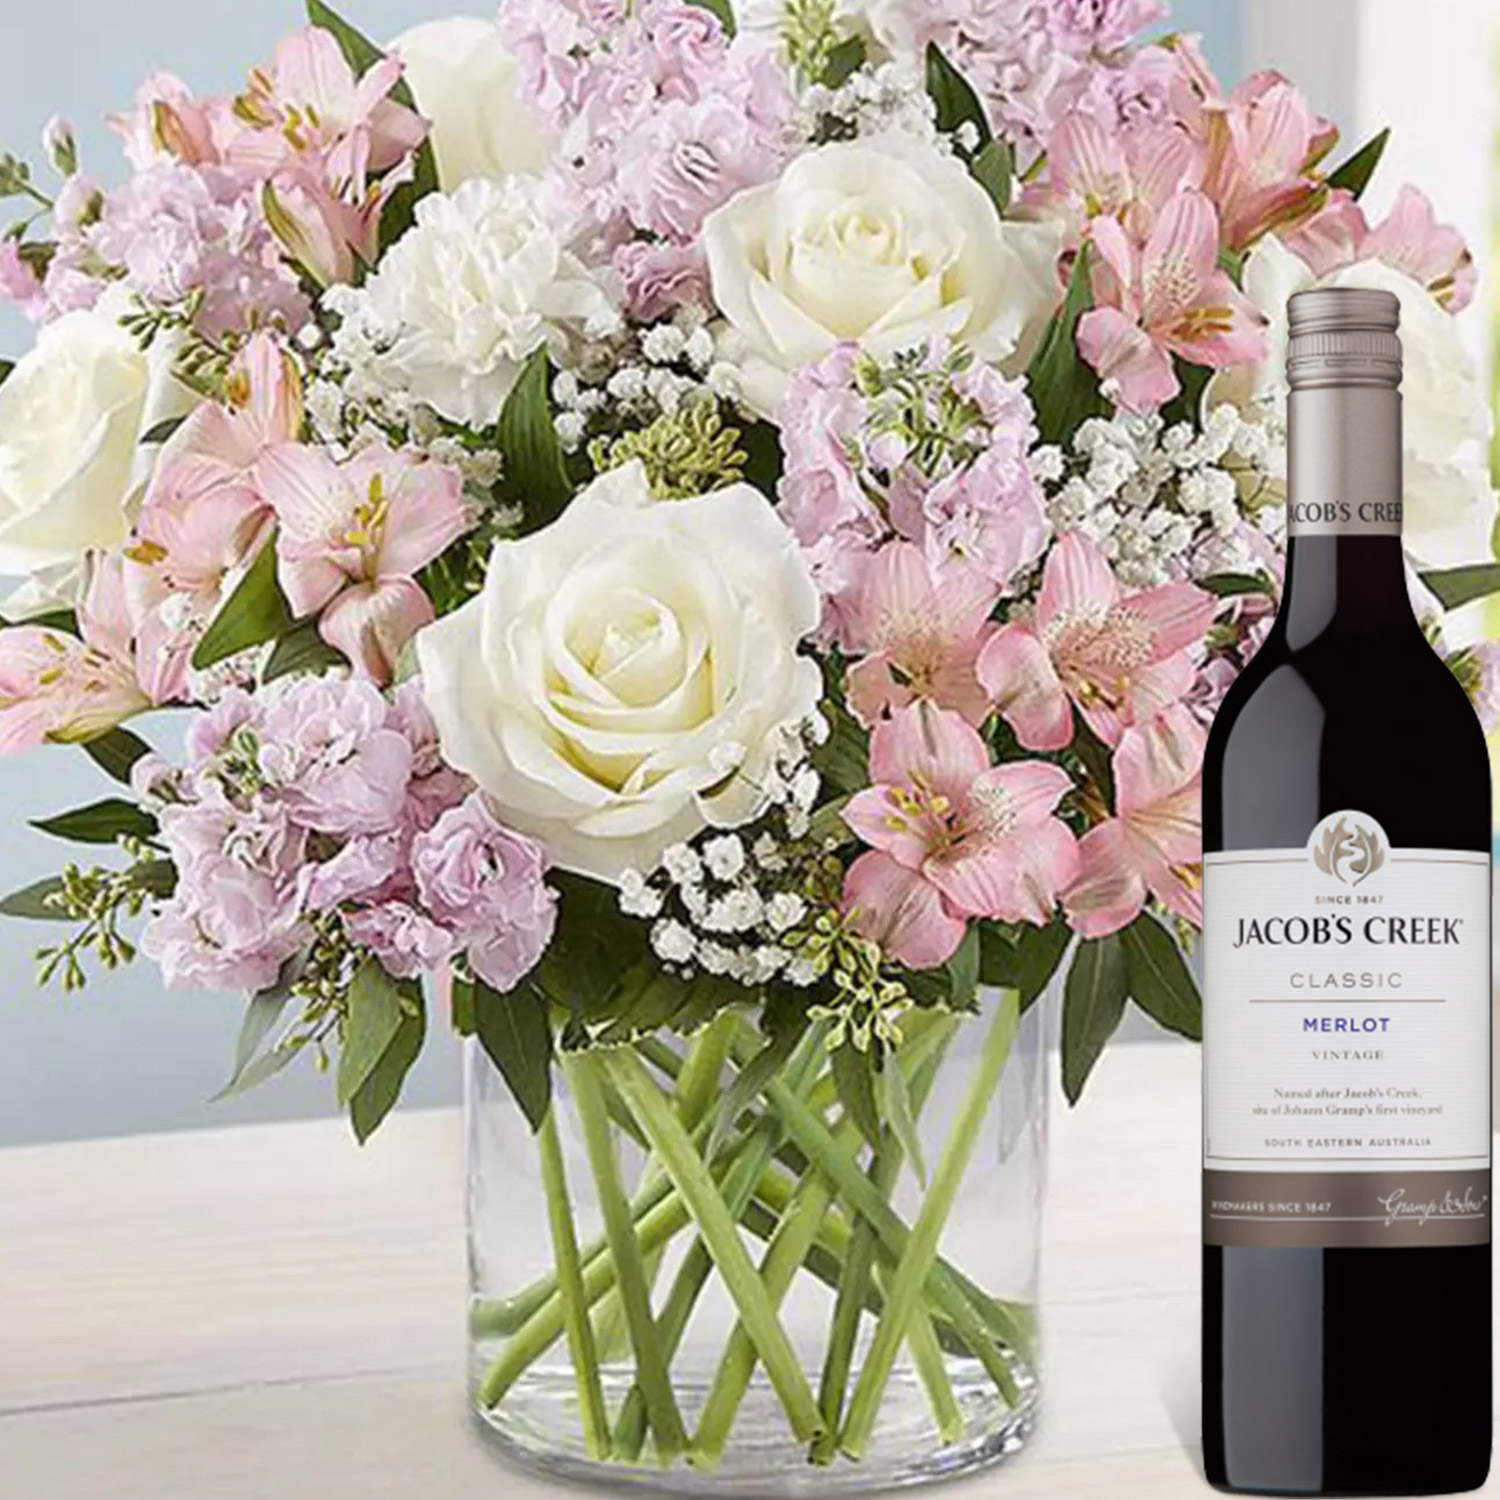 Online Flower Arrangement With Jacob Creek Wine Gift ...